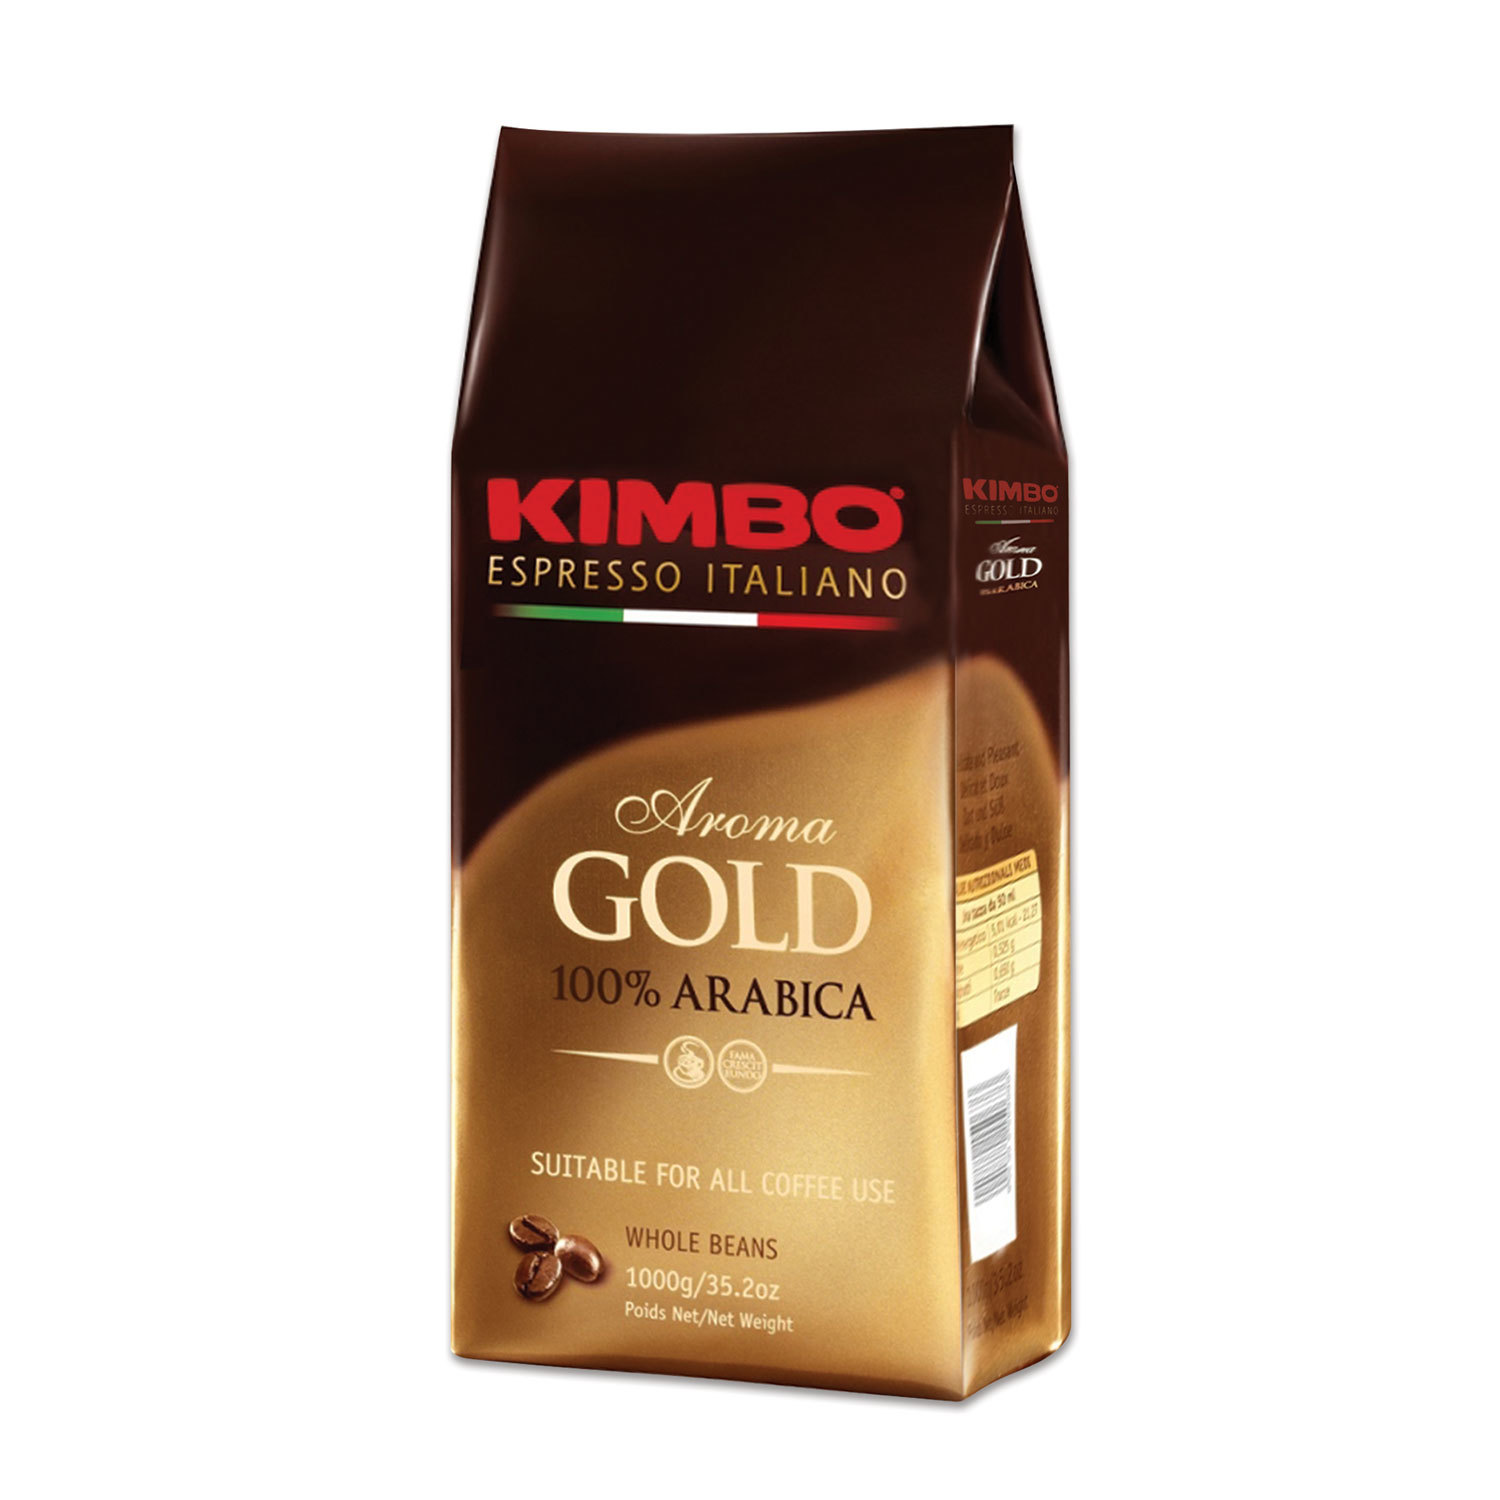 Купить зерновой кофе для кофемашины недорого. Кофе Арома Голд Кимбо в зернах. Молотый Kimbo Aroma Gold 100% Arabica. Кофе Kimbo Aroma Gold Arabica в зернах, 1кг. Кофе в зернах Kimbo Arabica.